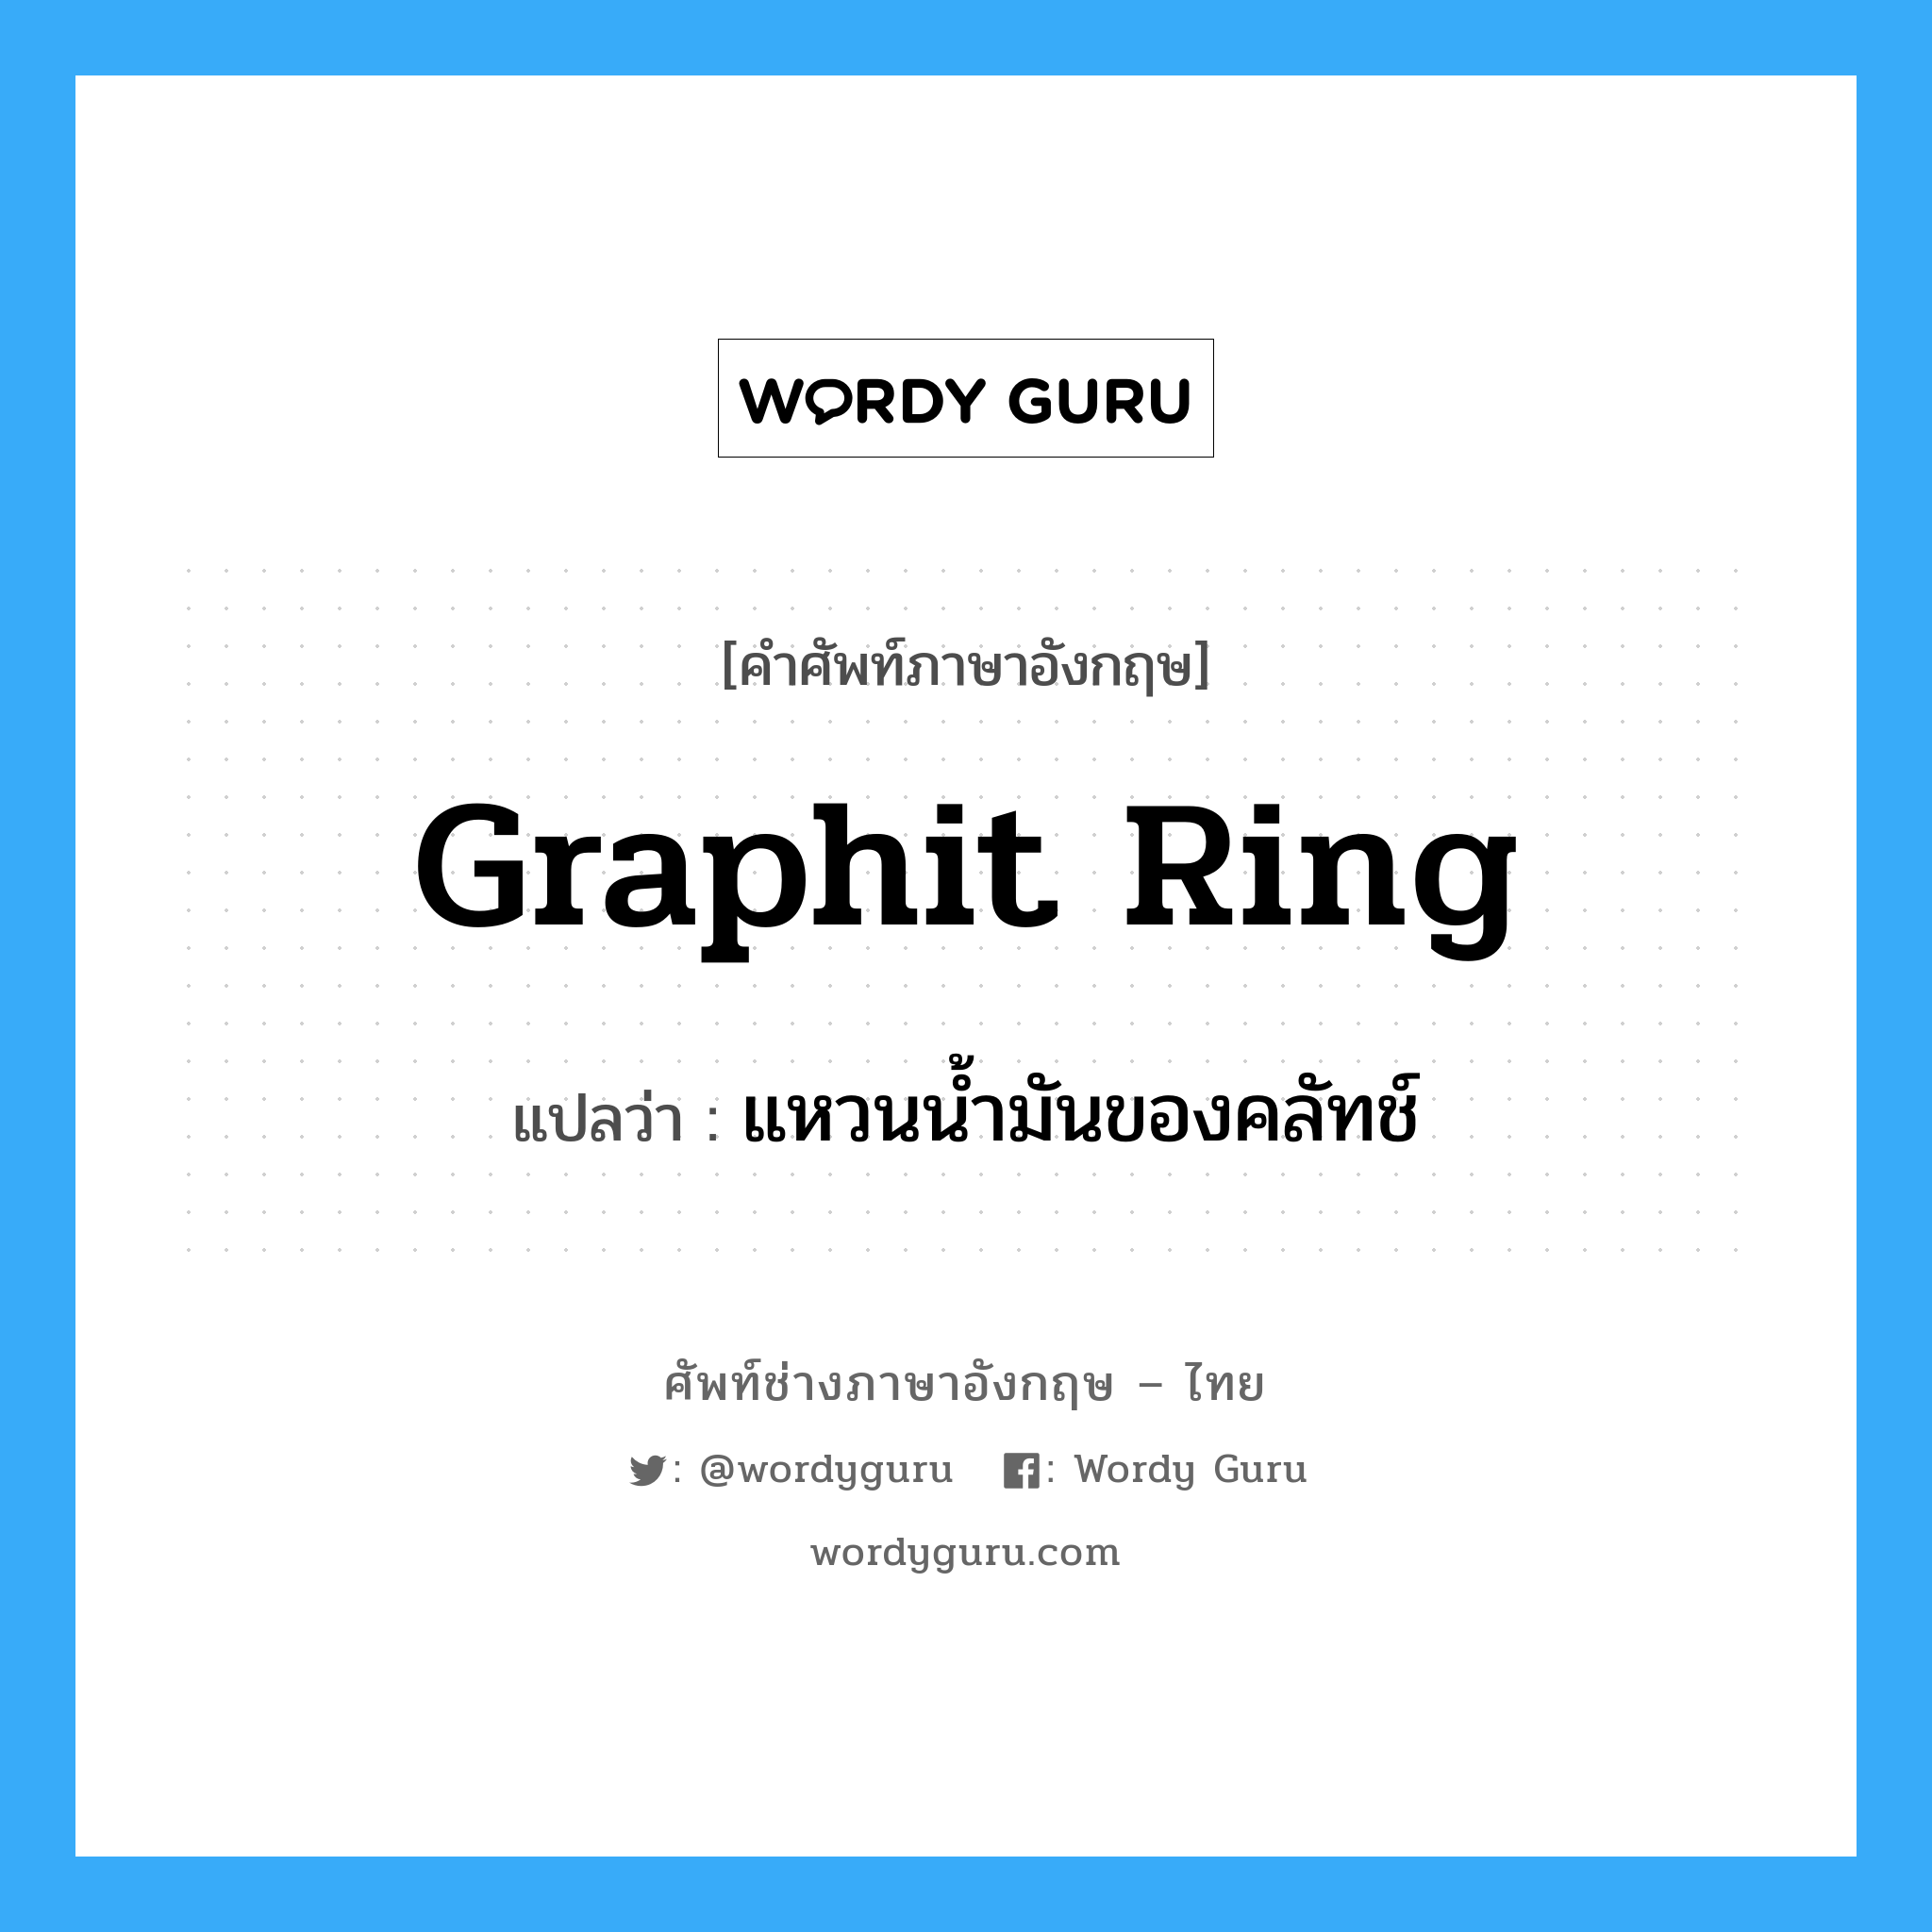 graphit ring แปลว่า?, คำศัพท์ช่างภาษาอังกฤษ - ไทย graphit ring คำศัพท์ภาษาอังกฤษ graphit ring แปลว่า แหวนน้ำมันของคลัทช์